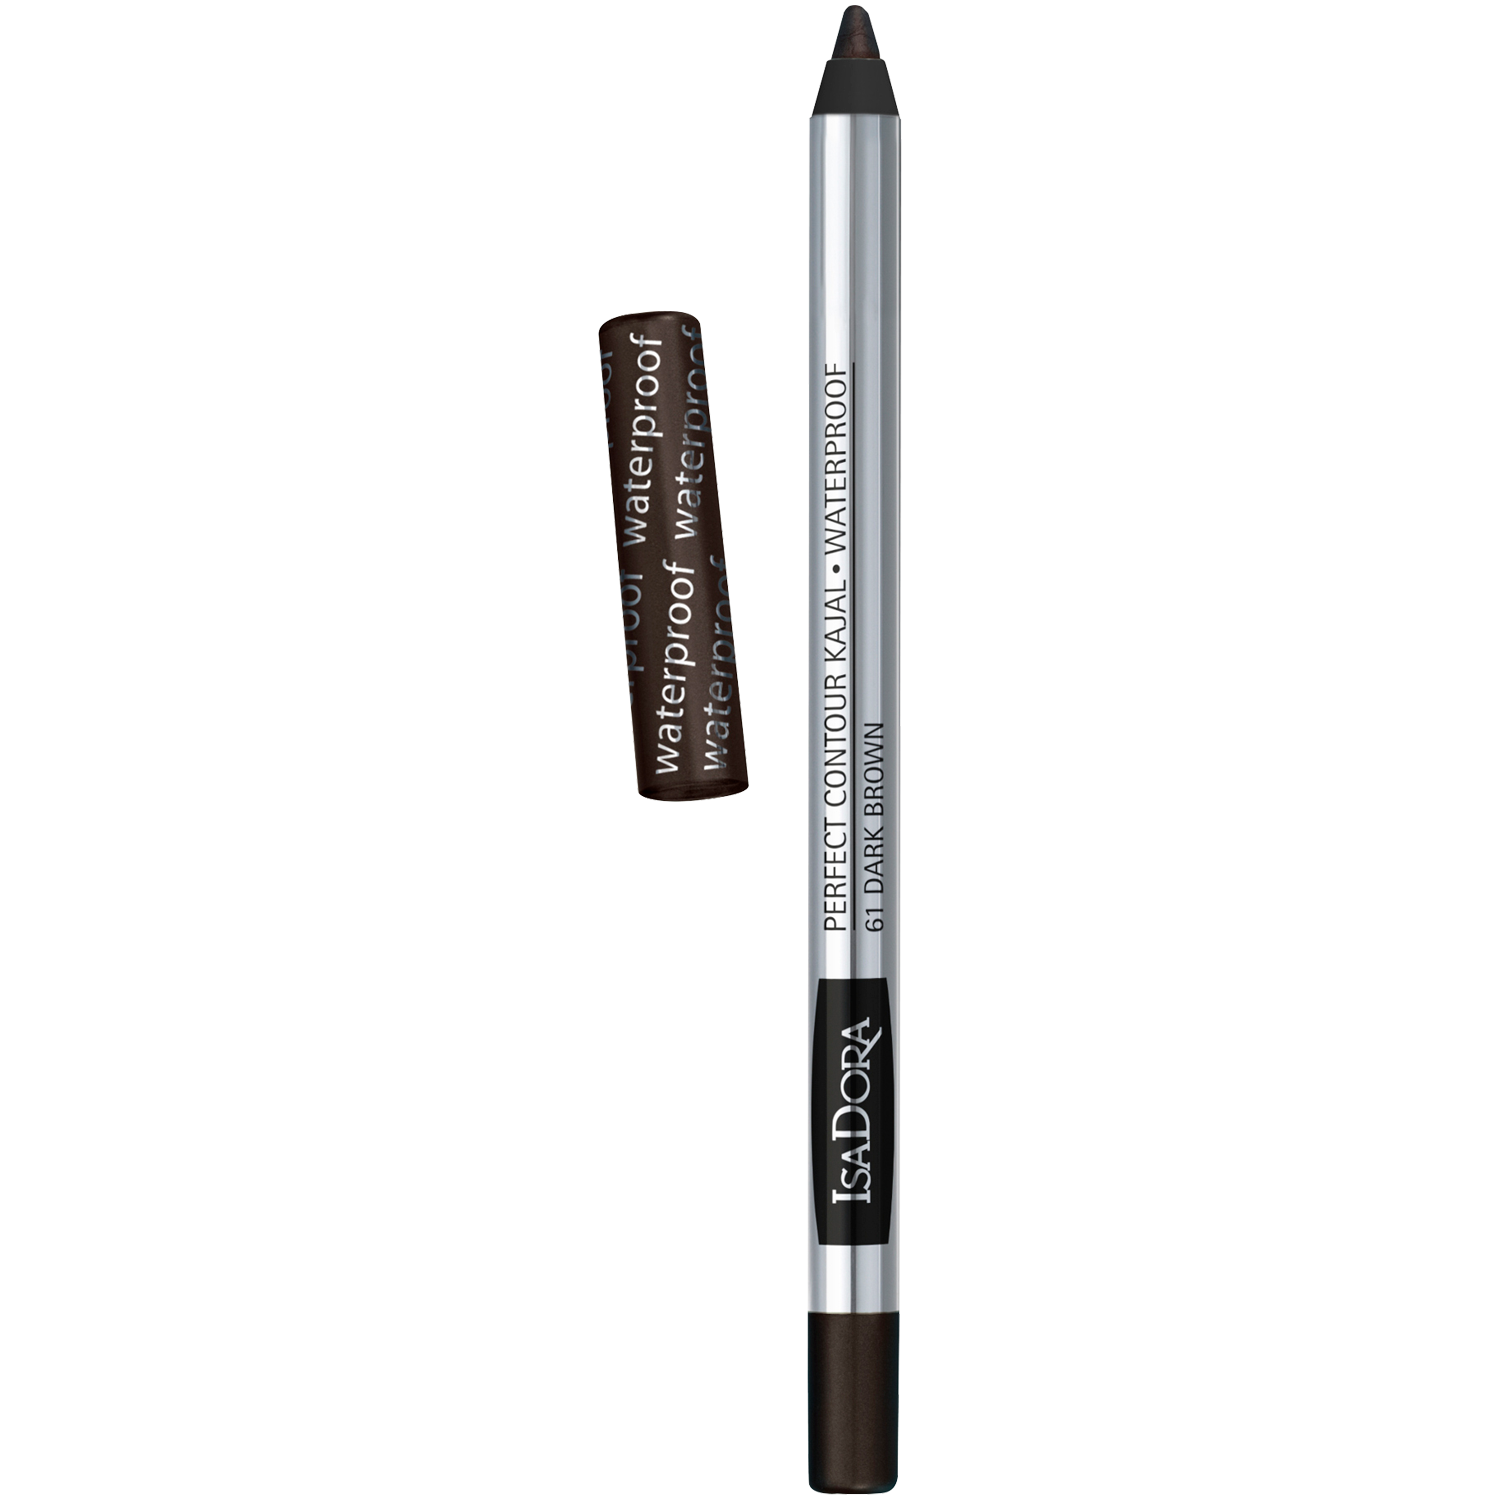 Водостойкий карандаш для глаз 61 темно-коричневый Isadora Kajal, 1,3 гр водостойкий карандаш для глаз 61 темно коричневый isadora kajal 1 3 гр